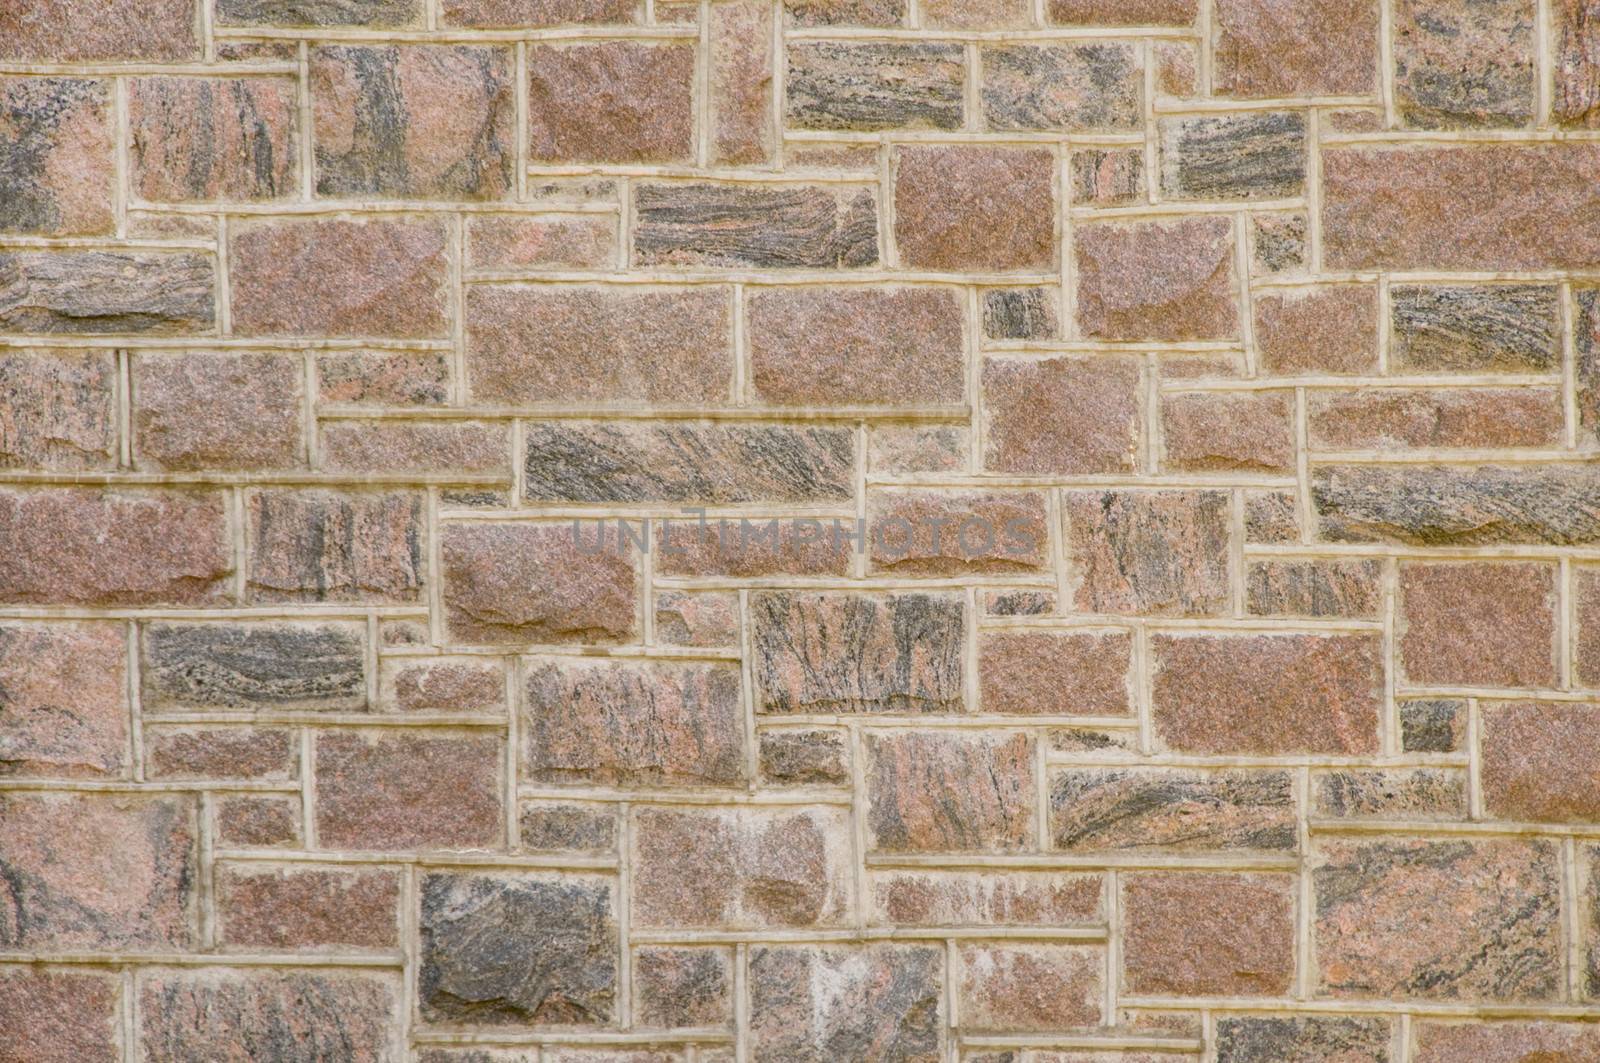 Reddish masonry block wall by Balefire9